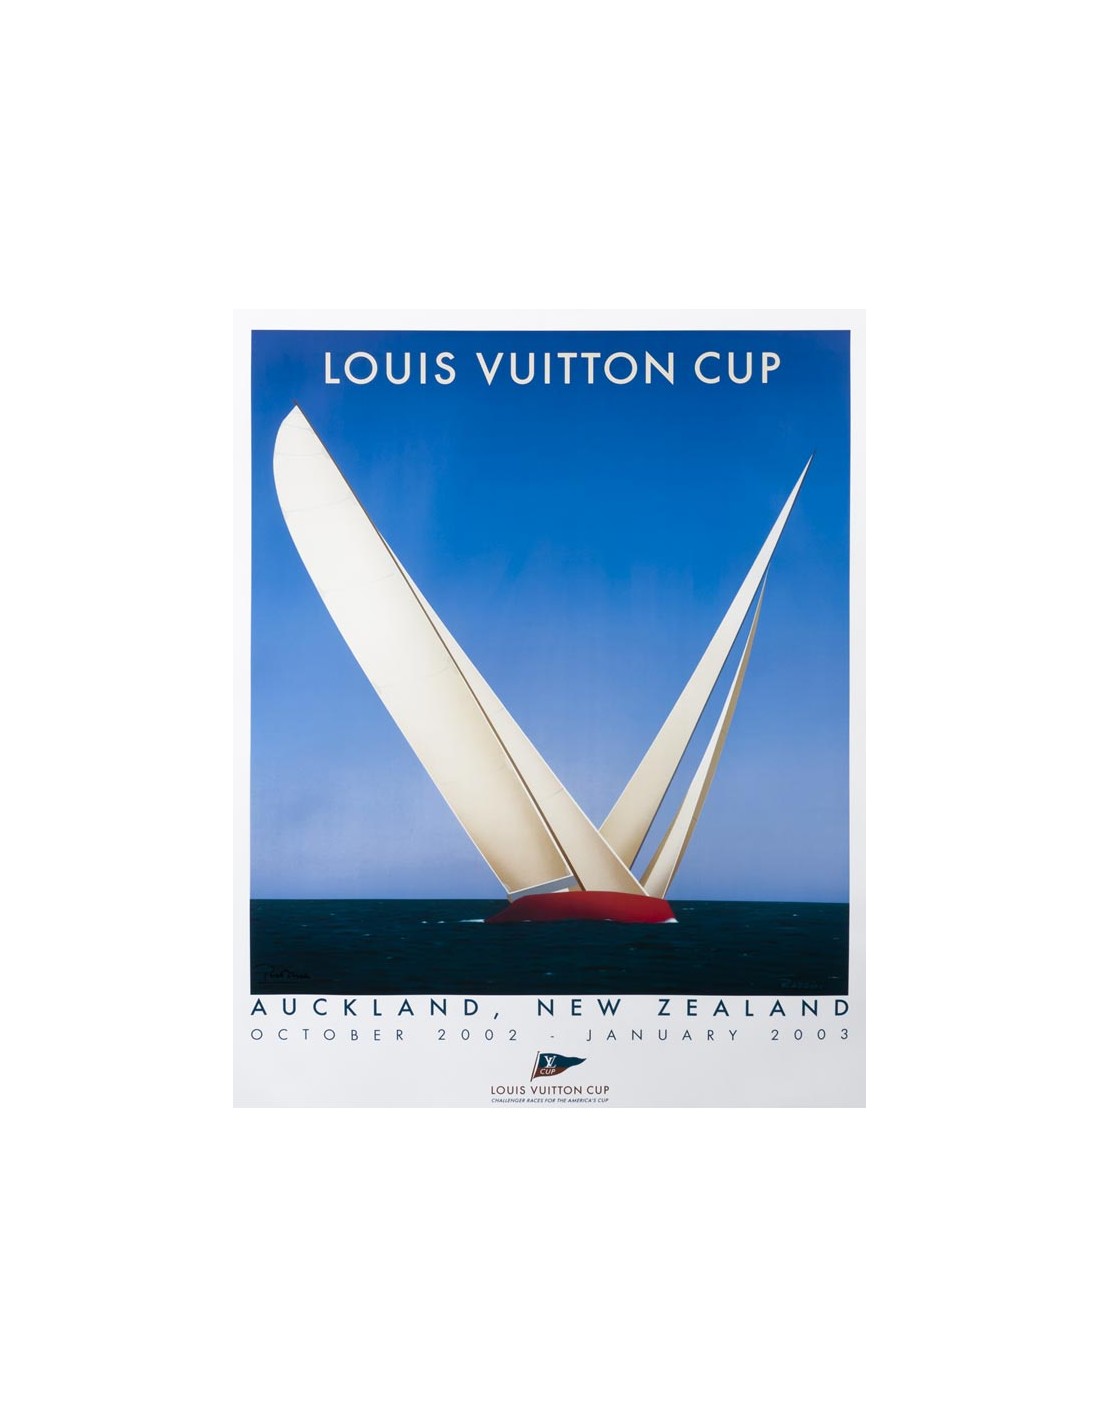 Louis Vuitton Cup 